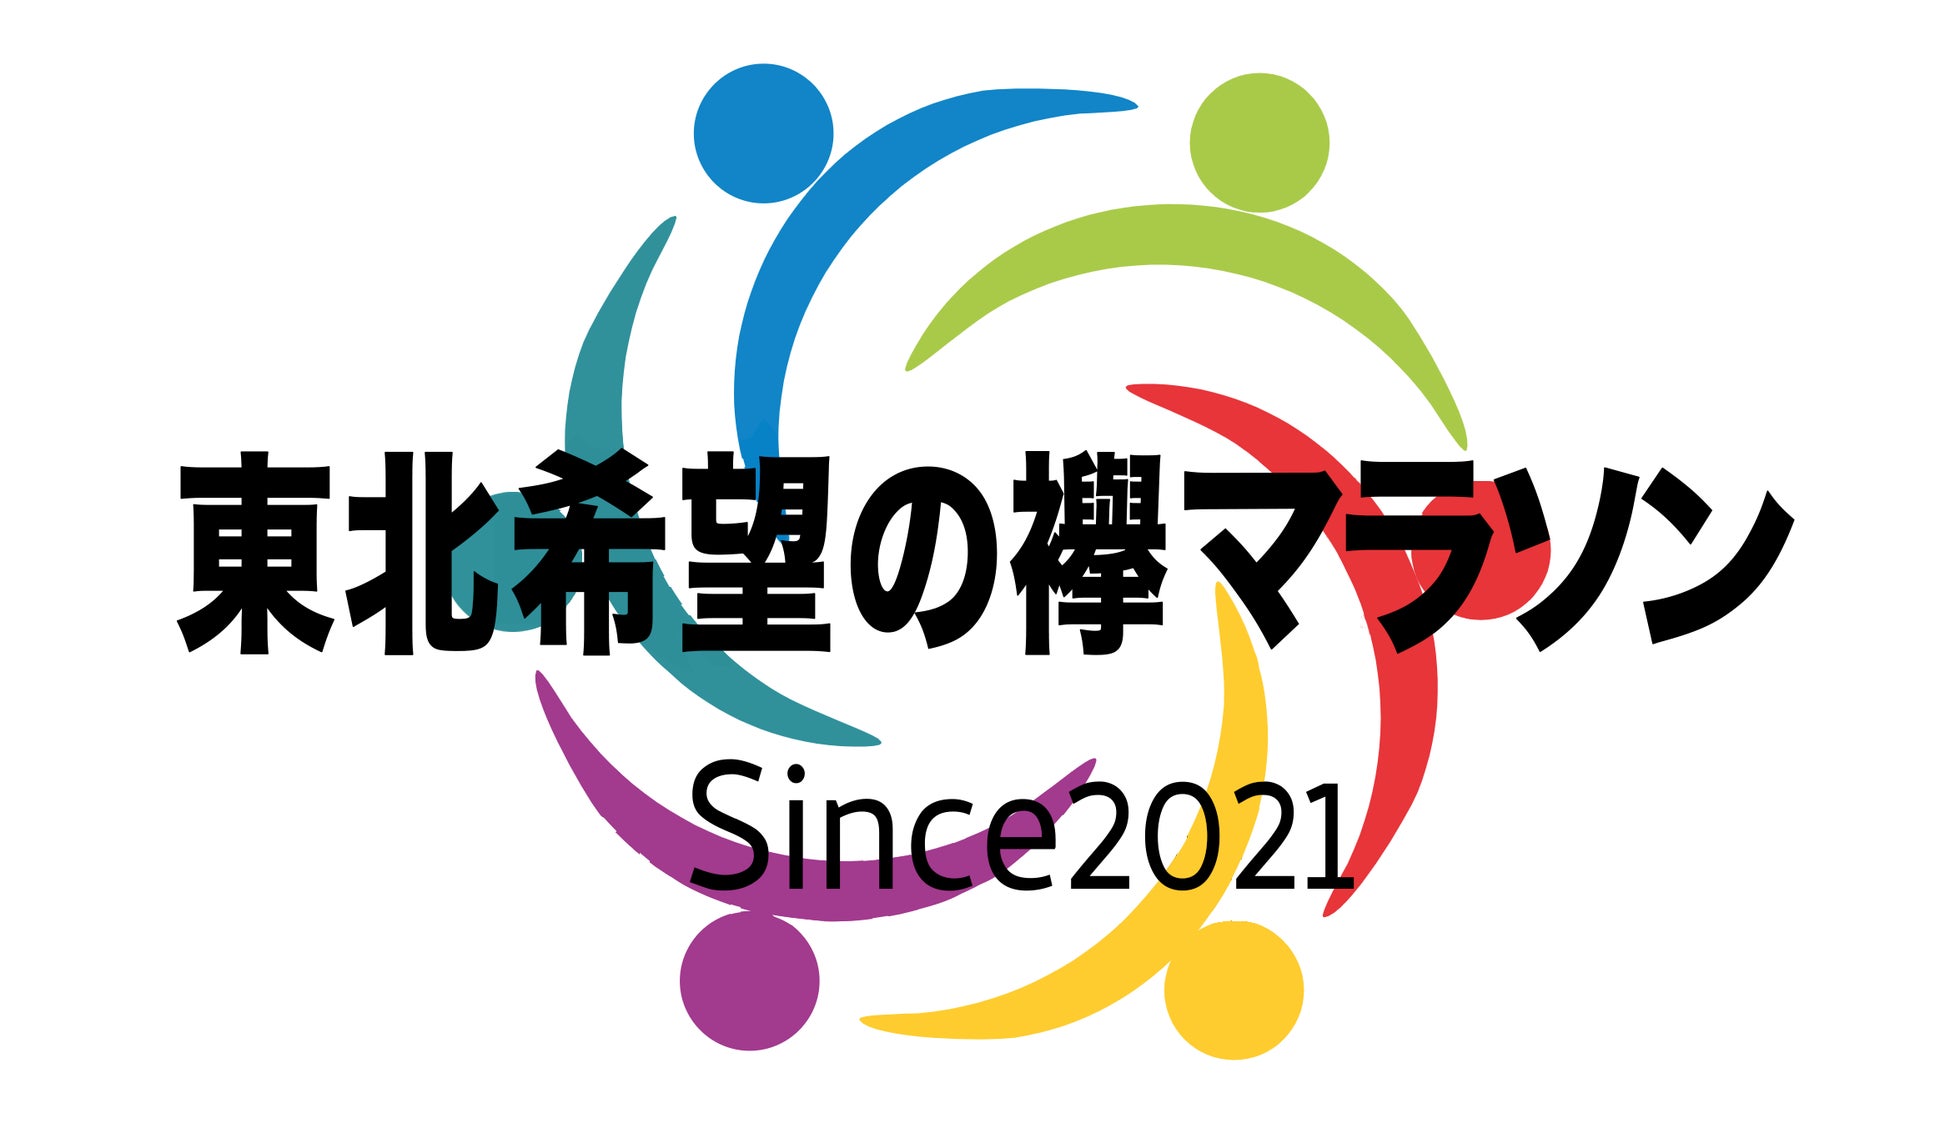 復興マラソンイベント「第2回東北希望の襷(たすき)マラソン山形天童大会」開催！～東日本大震災への復興と鎮魂の思いを捧げるために～